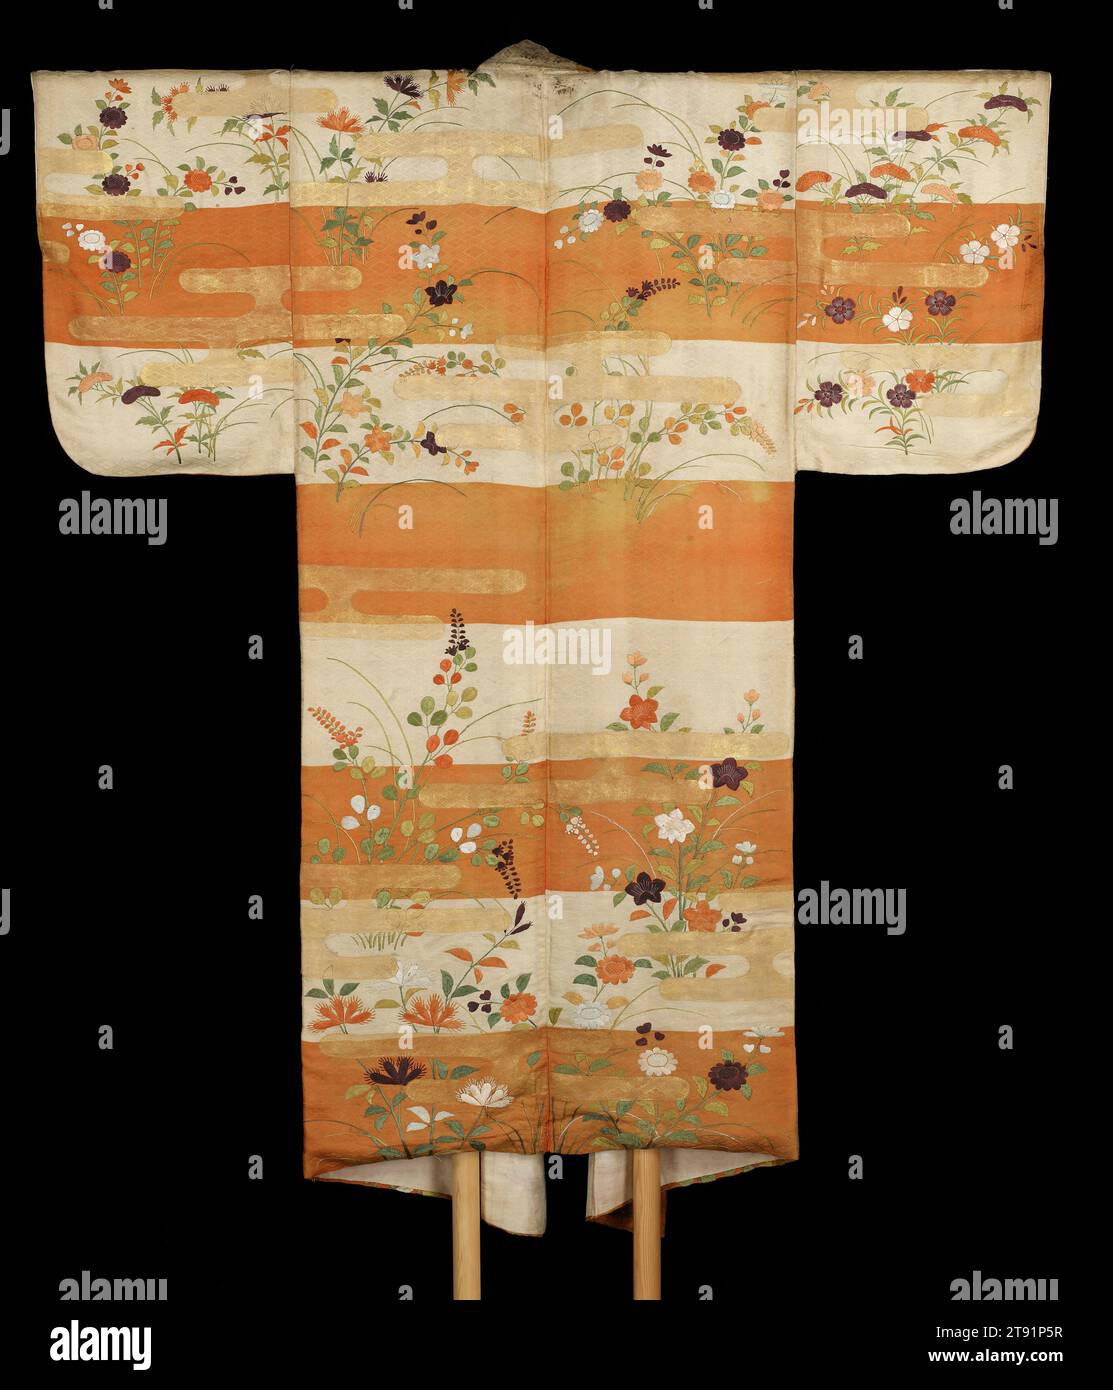 Costume Noh (nuihaku) con fiori autunnali, metà del XVII secolo, sconosciuto giapponese, 53 1/4 x 65 pollici (135,26 x 165,1 cm), ricamo in seta e foglia d'oro su seta, Giappone, XVII secolo, nel dramma musicale tradizionale giapponese chiamato Noh, i personaggi femminili di solito indossano un abito sotto forma di questo, noto come nuihaku, sotto una veste esterna chiamata karaori. Gli accappatoi Nuihaku presentano una combinazione di design ricamati e foglie applicate in oro e argento. Qui, le fasce d'oro rappresentano la nebbia che galleggia in un prato autunnale tra i fiori, tra cui il cockscomb simile a una fiamma, dianthus Foto Stock